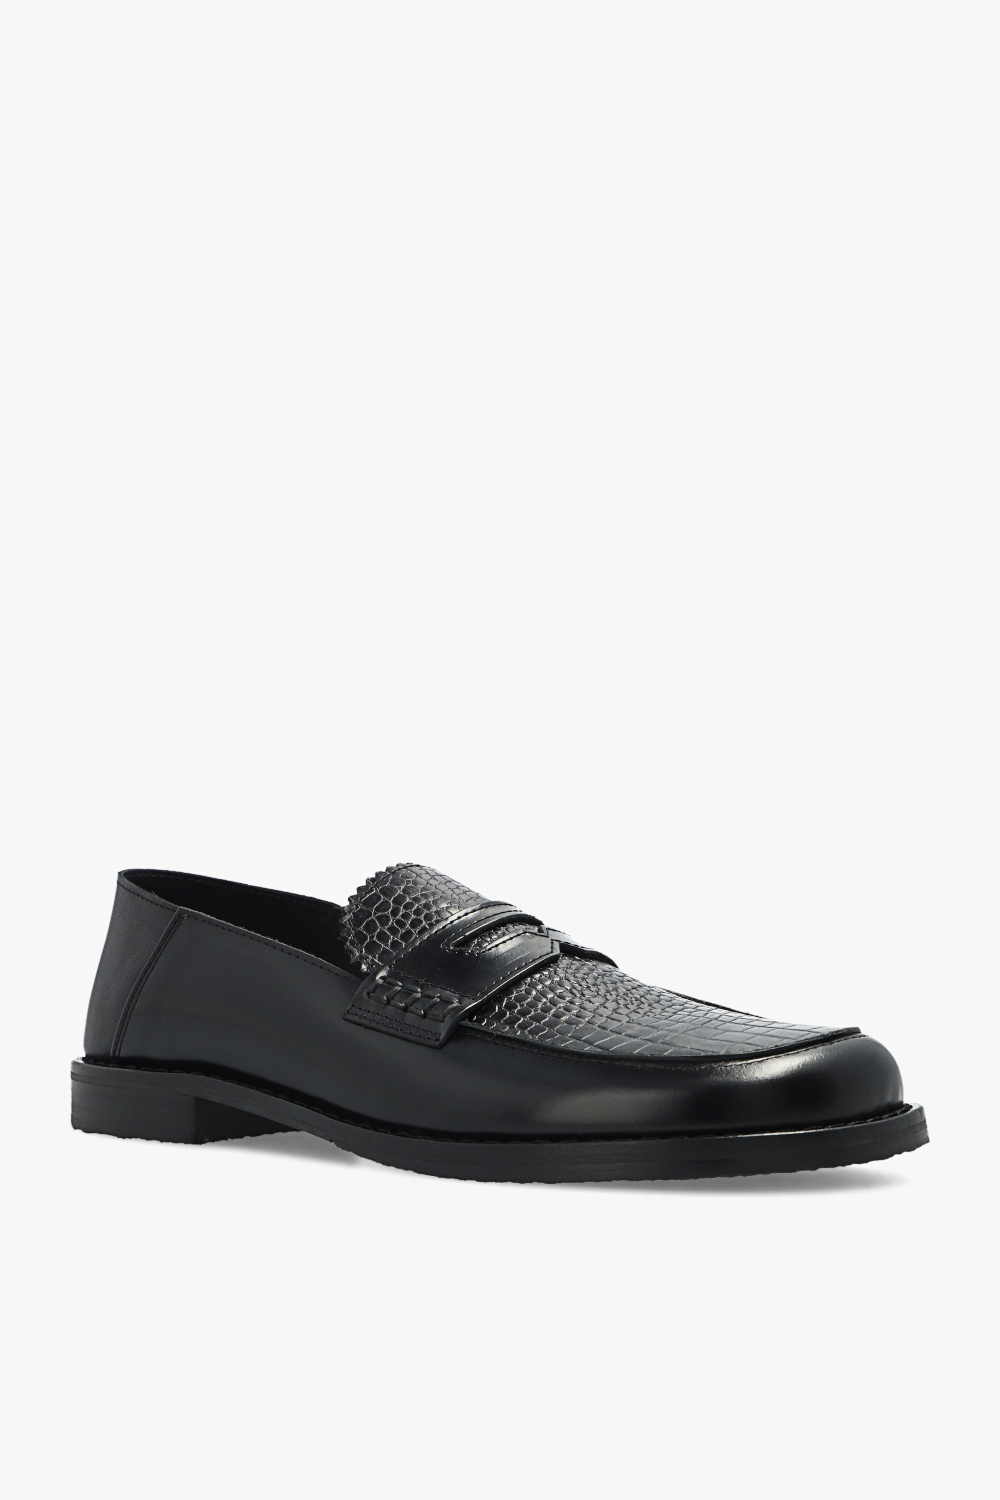 Eytys ‘Otello’ leather GINO shoes